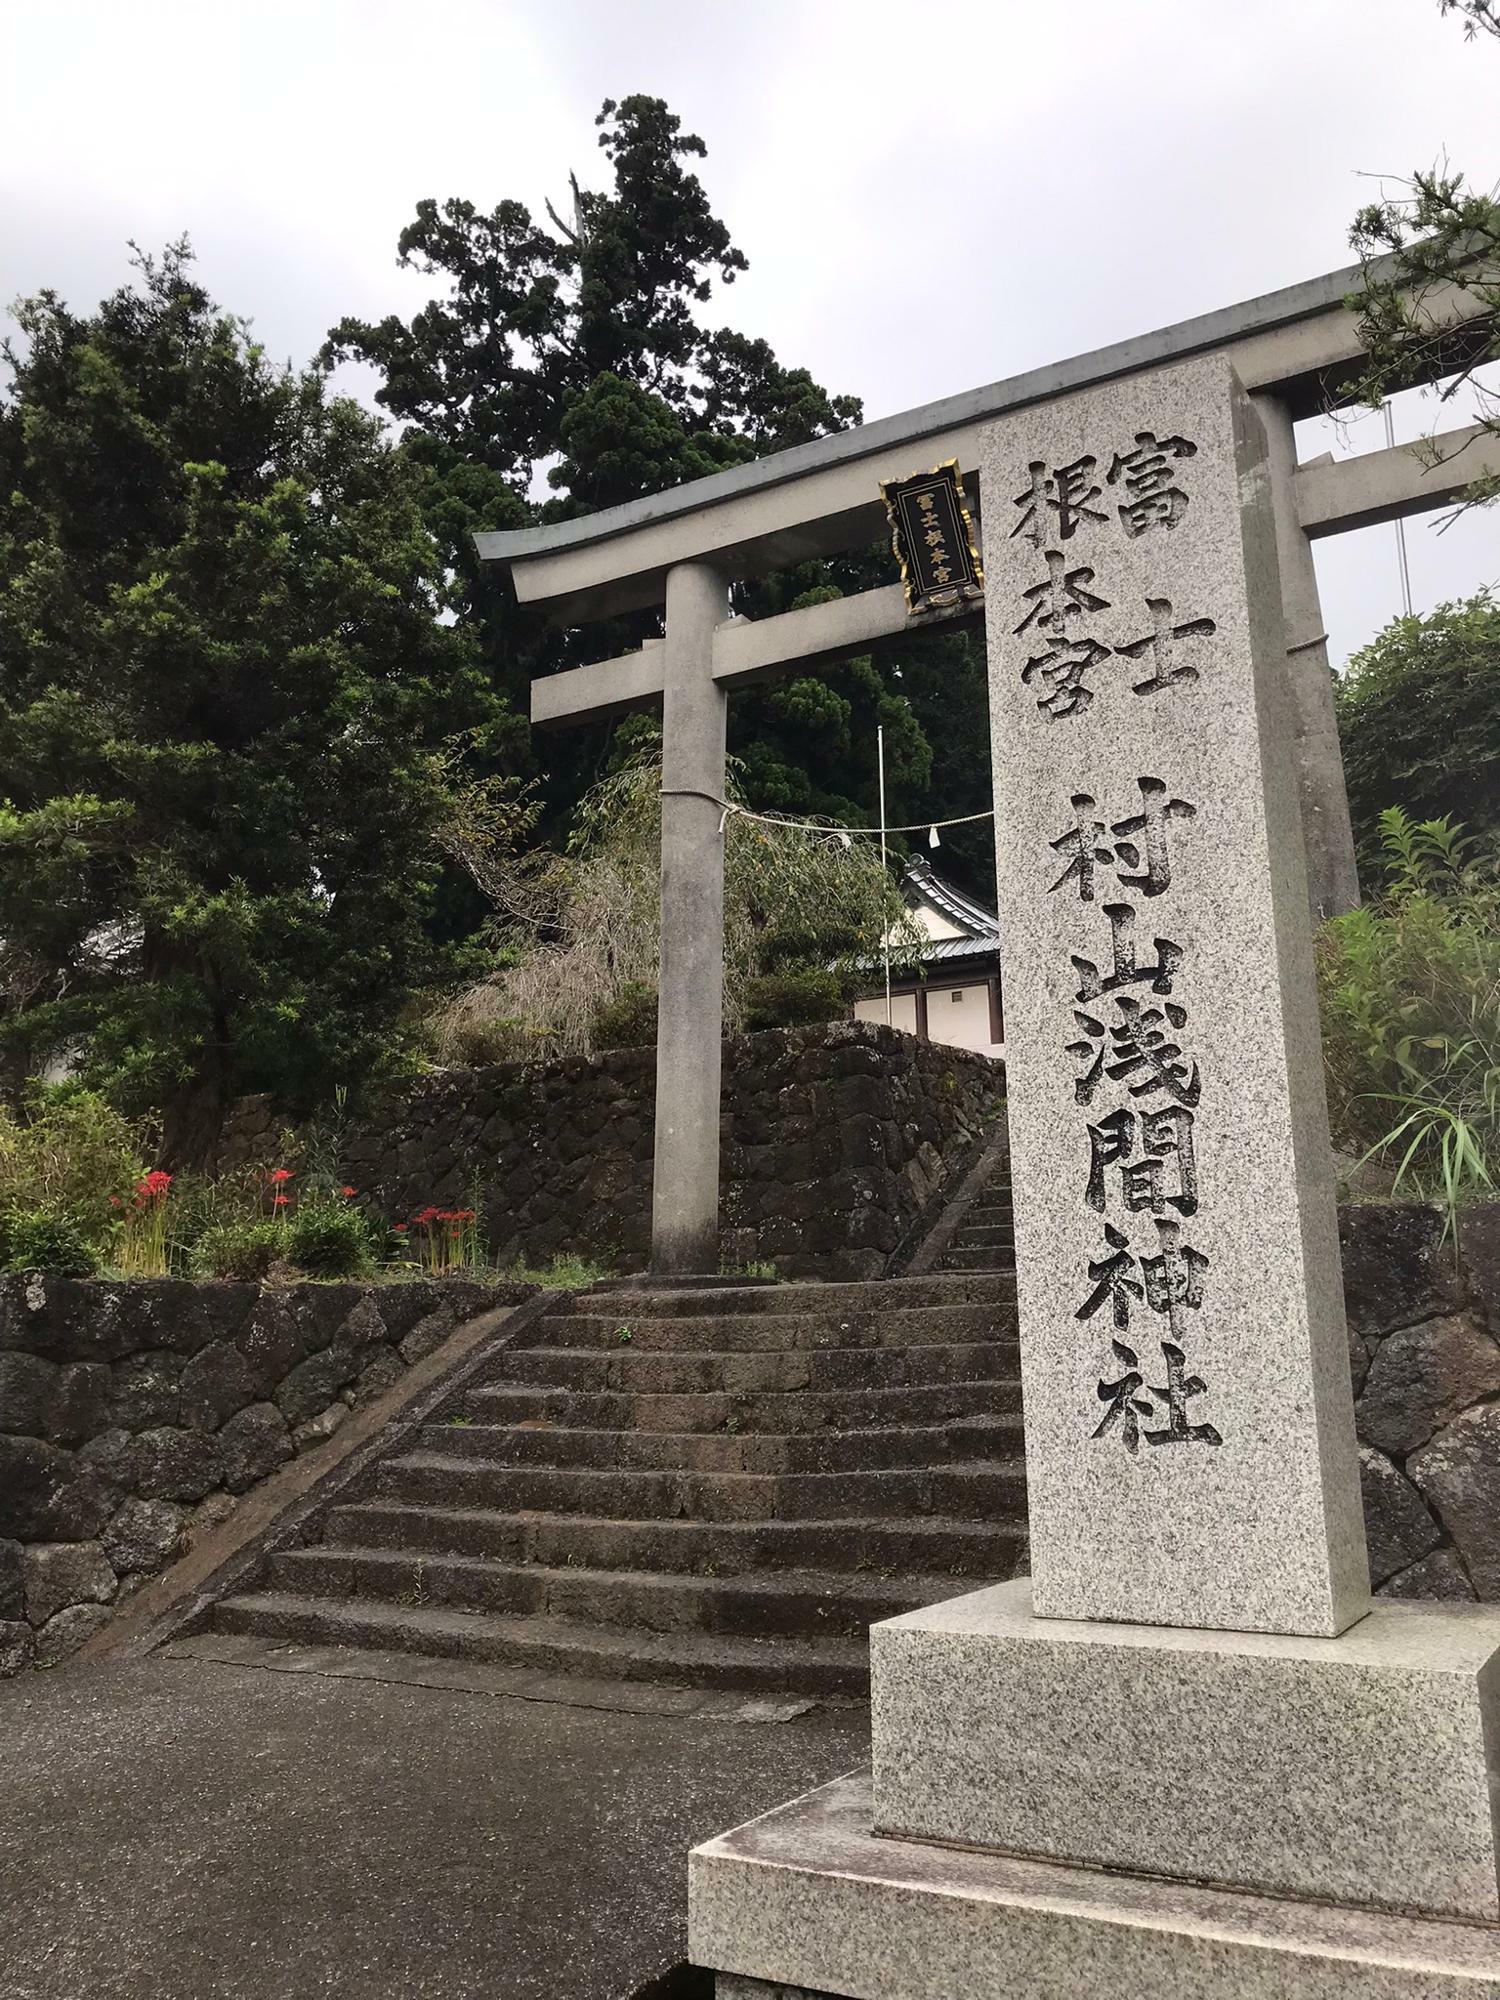 彼岸花の名所でもある村山浅間神社